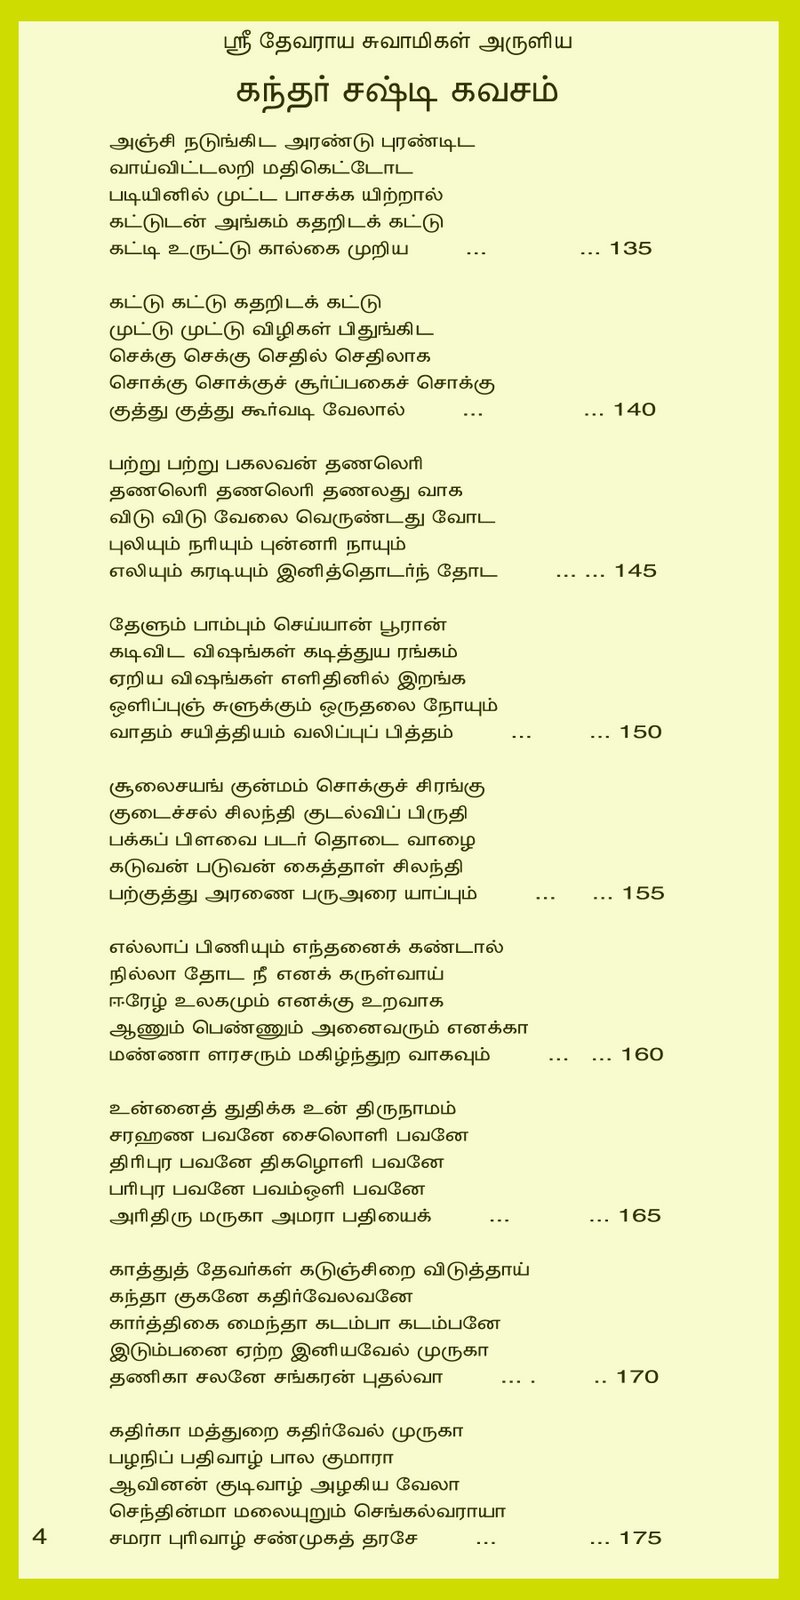 skanda sashti kavasam lyrics in malayalam pdf